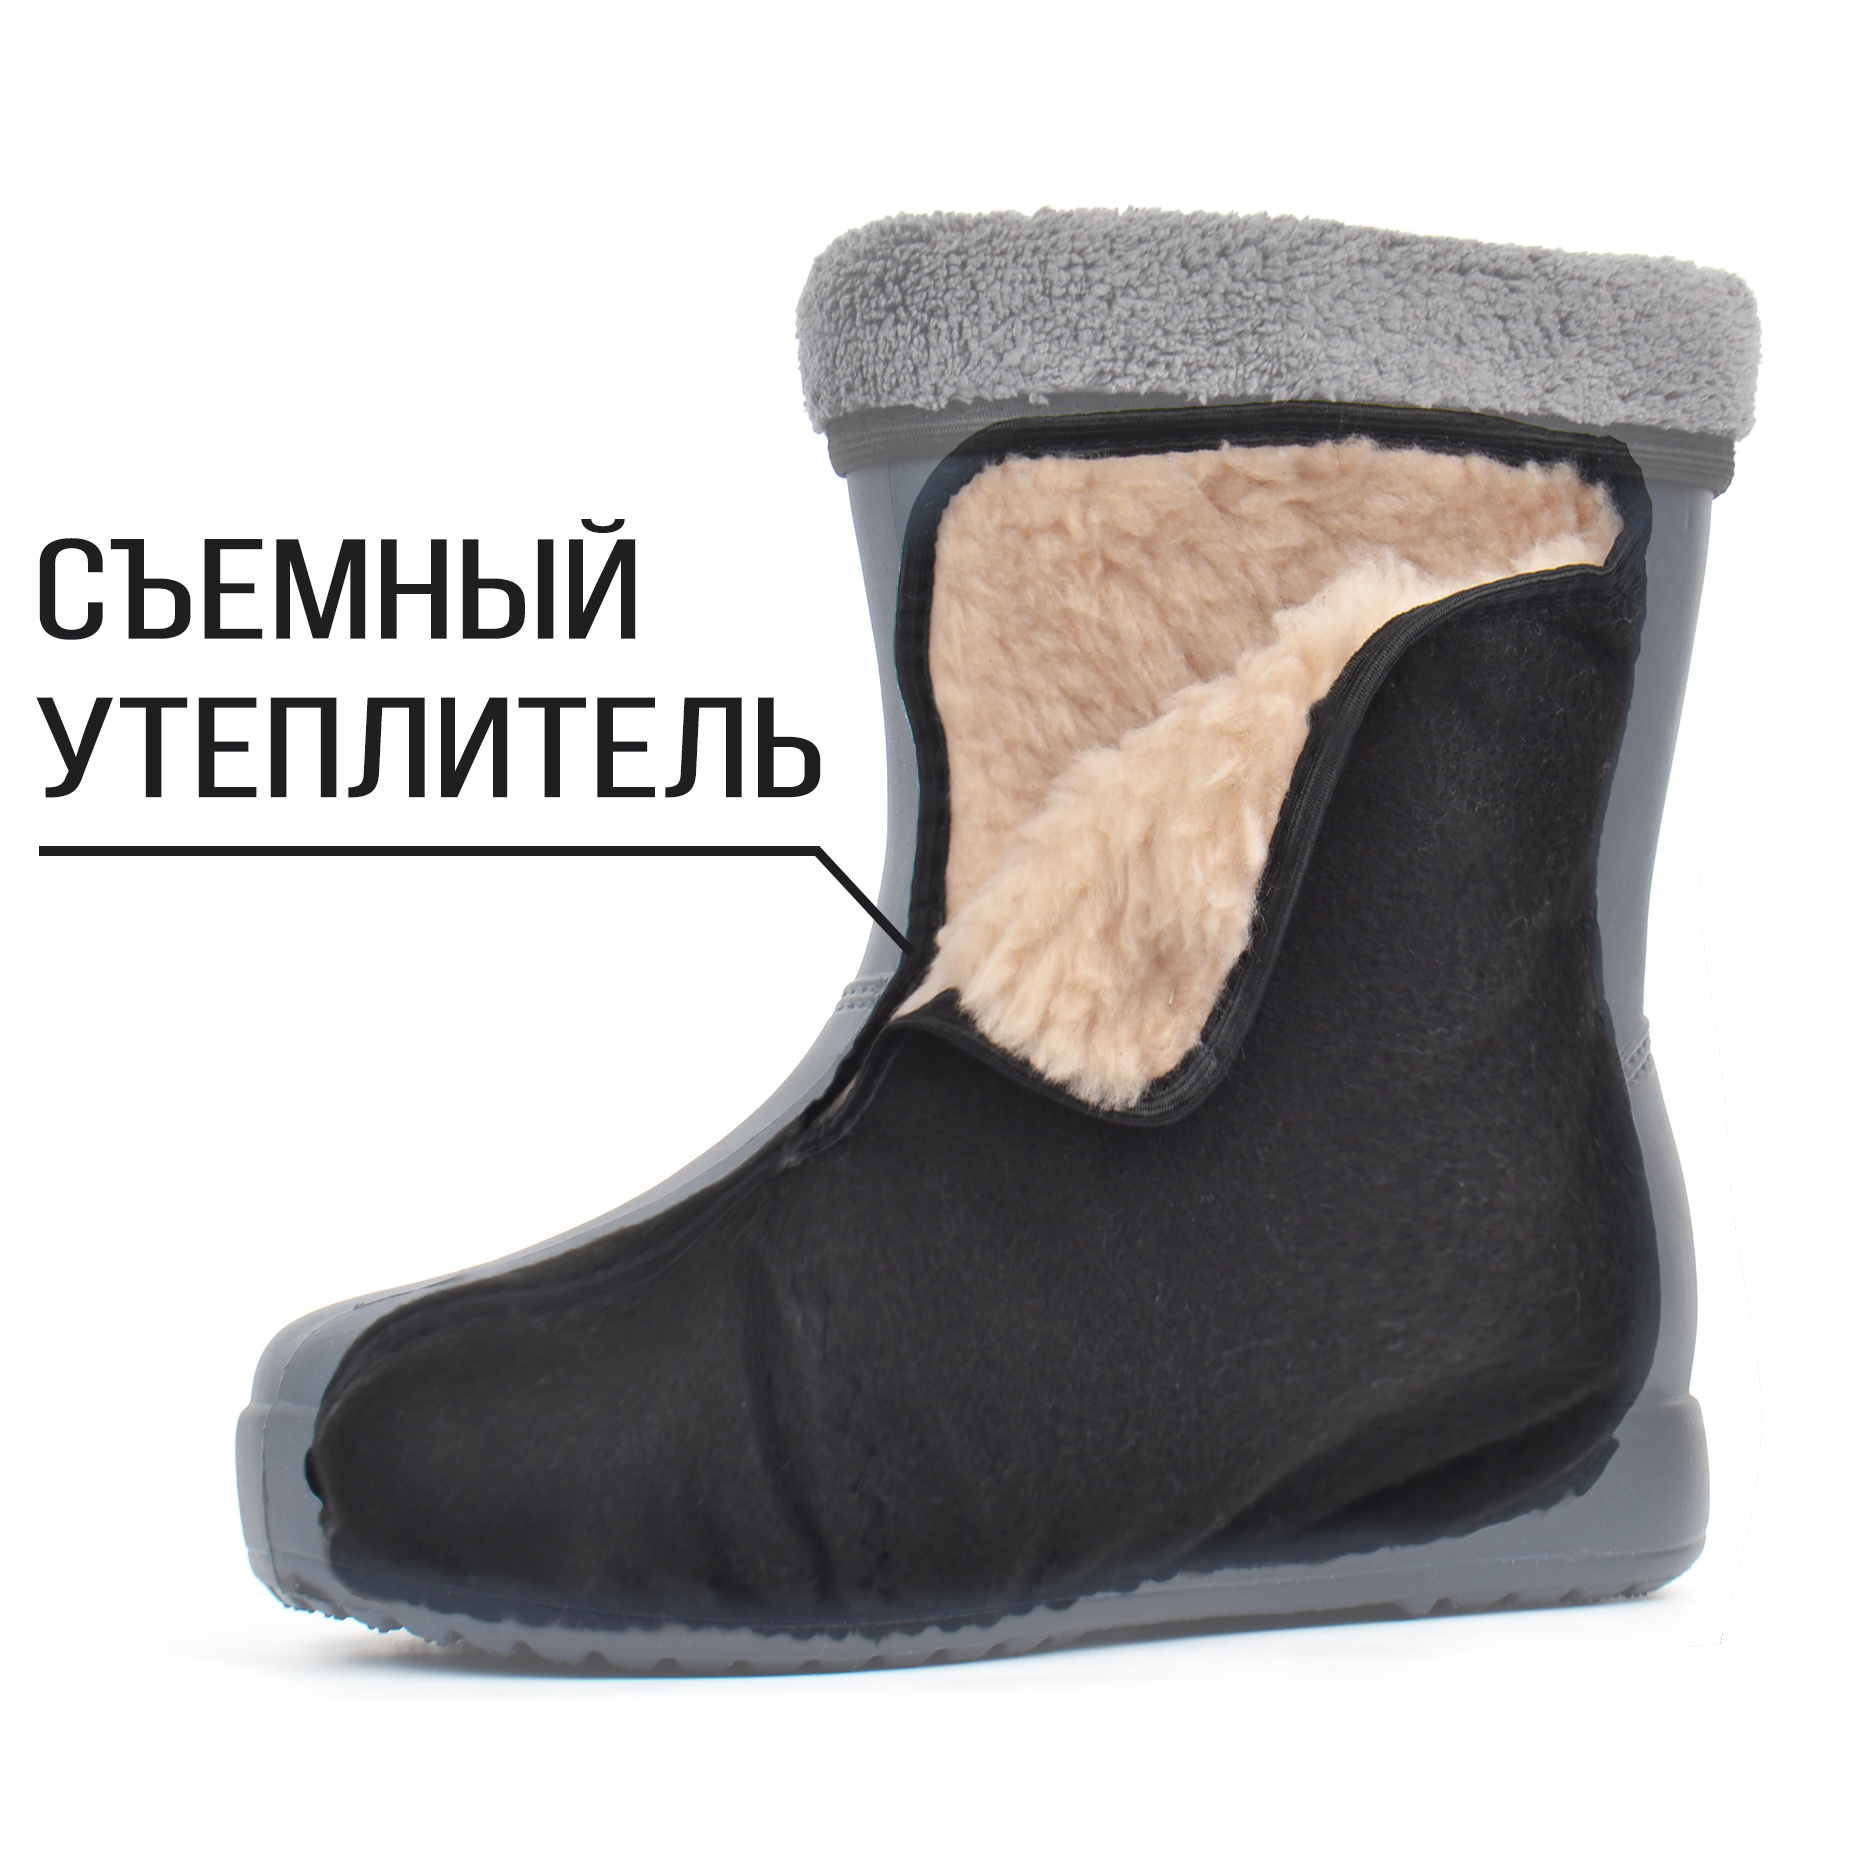 Взуття для сльоти на хутрі зі знімним утеплювачем Croc купити в Україні за супер ціною